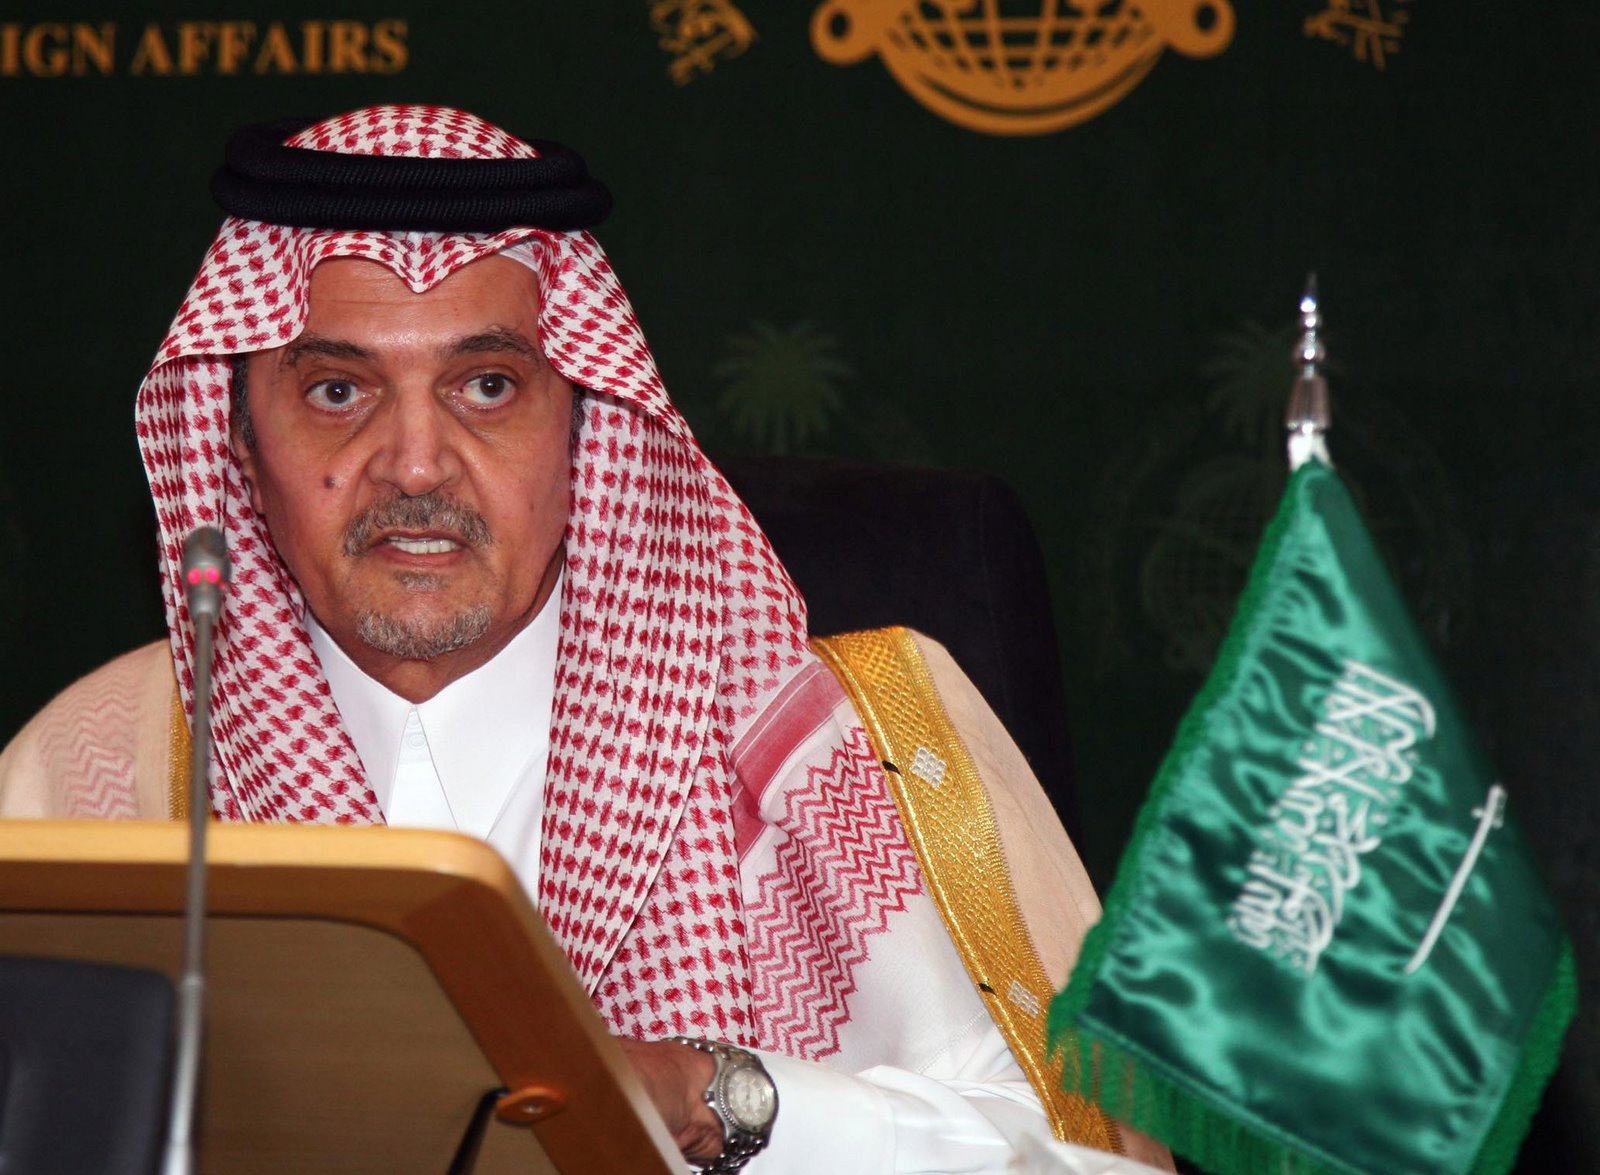 السعودية تعلن رسمياً قبول طلب الرئيس هادي بنقل المفاوضات بين القوى السياسية اليمنية إلى الرياض